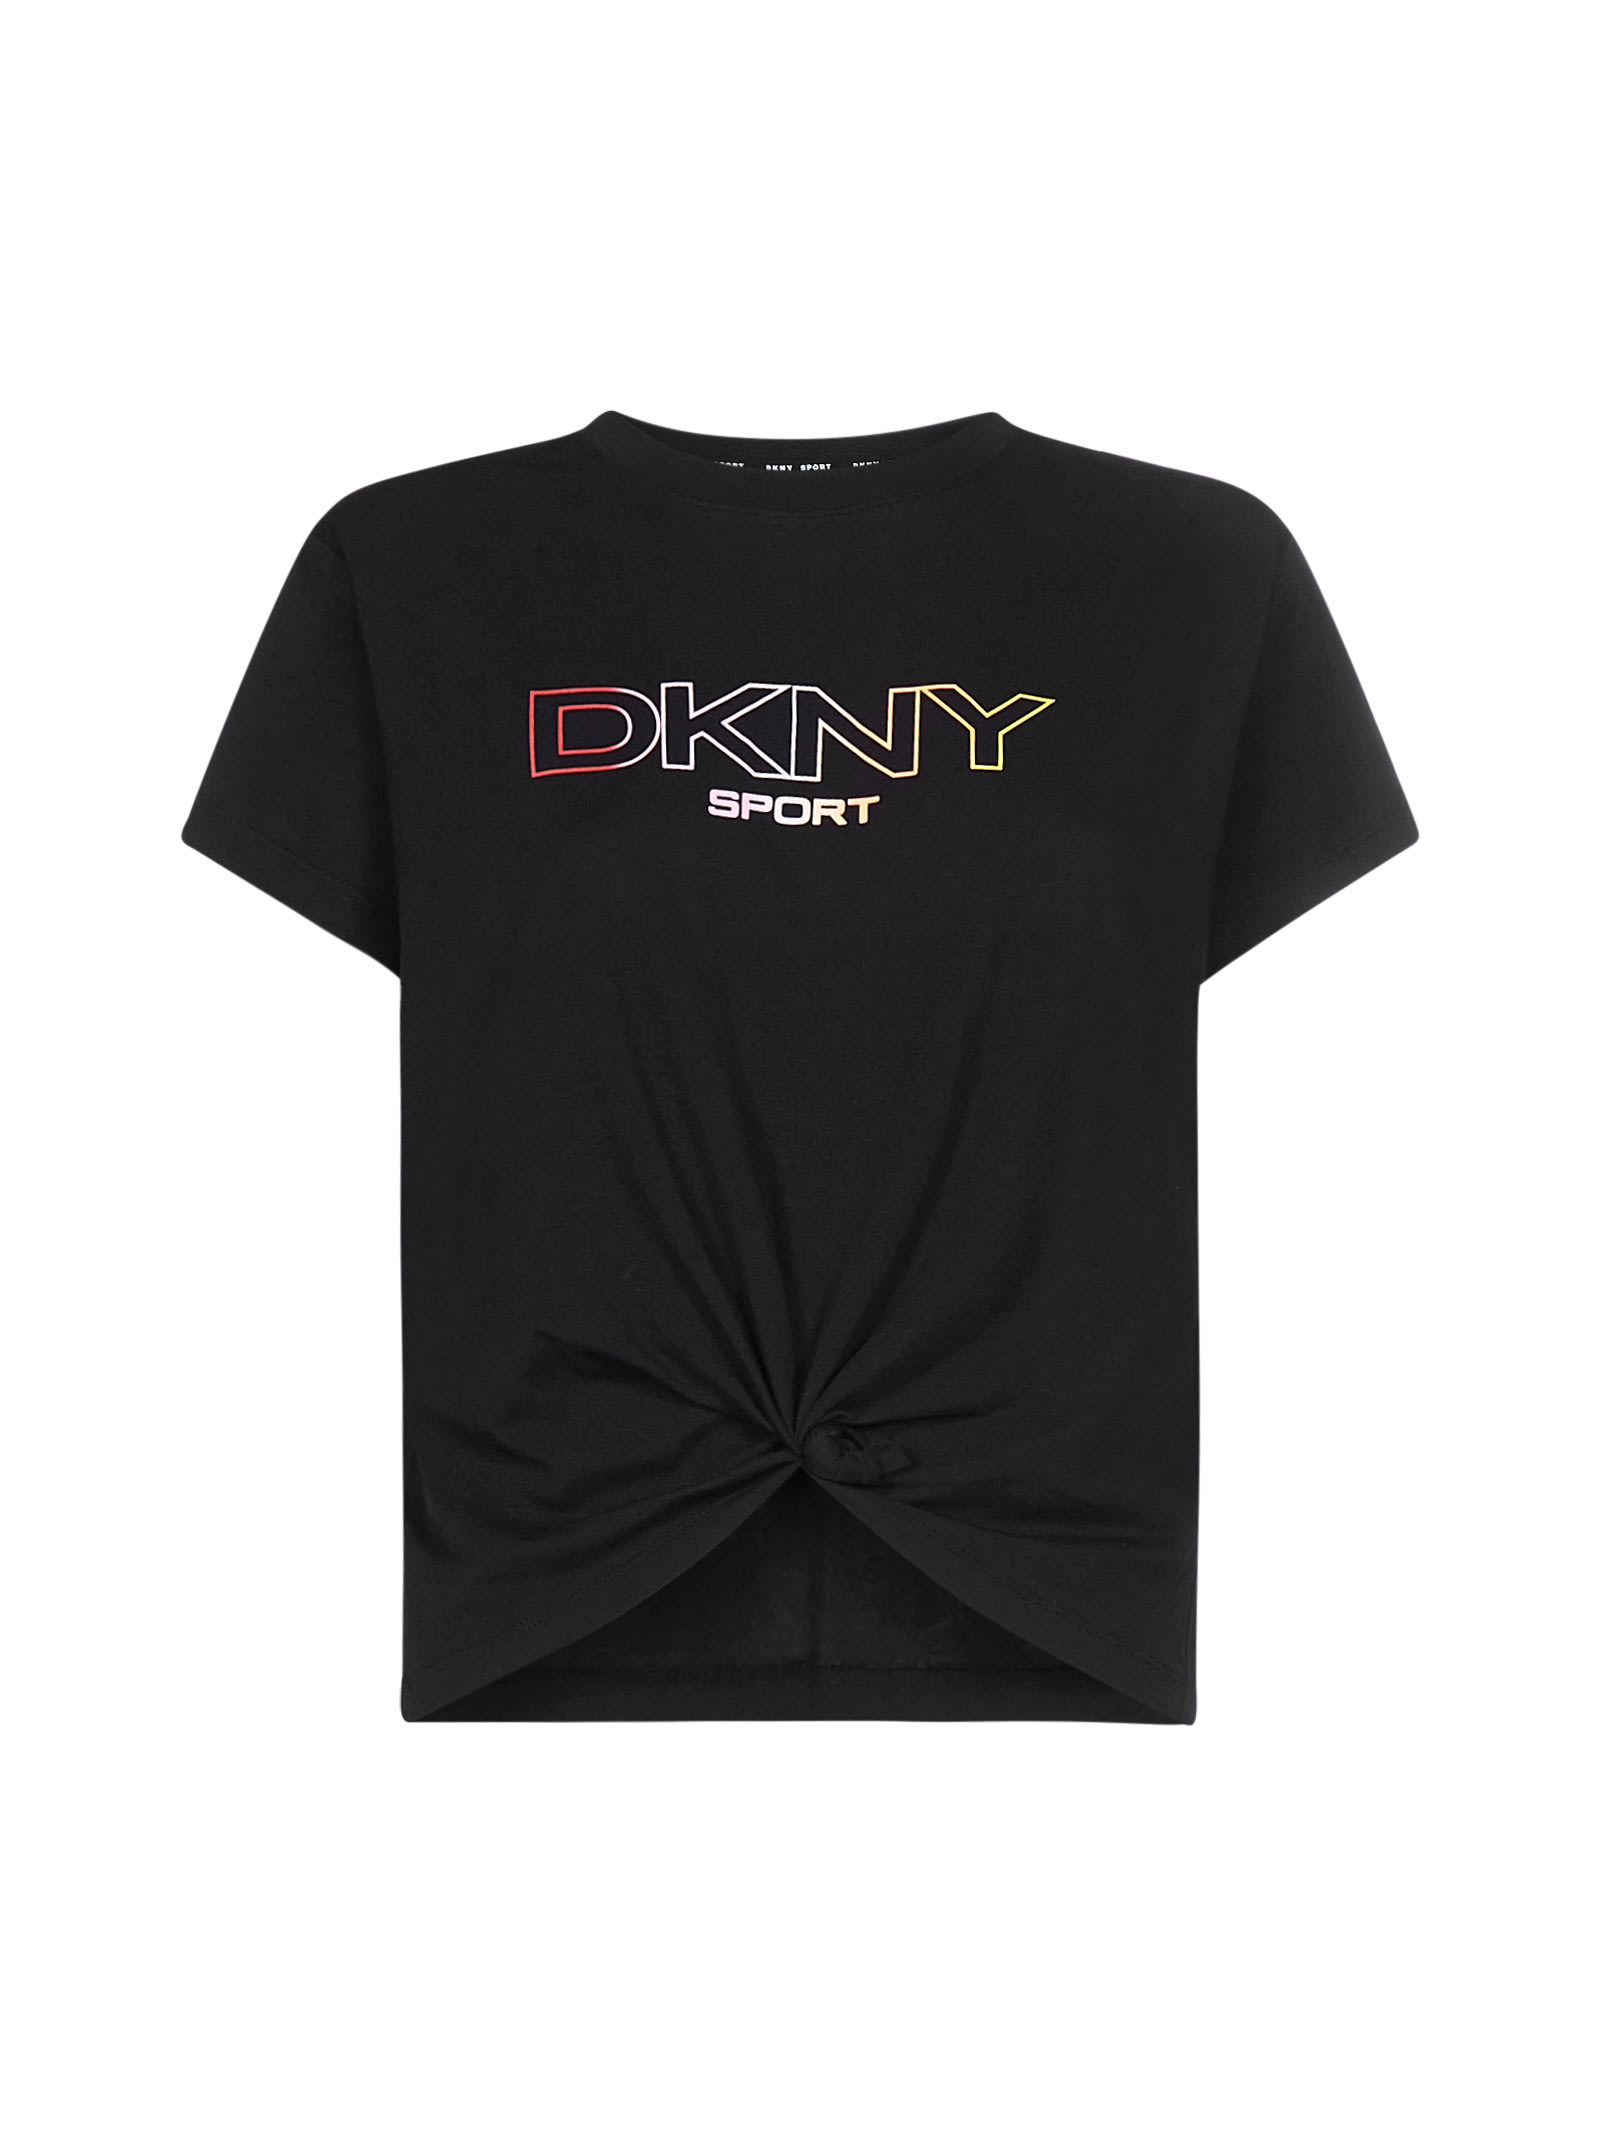 DKNY T-SHIRT,DP1T8020 -BLACK